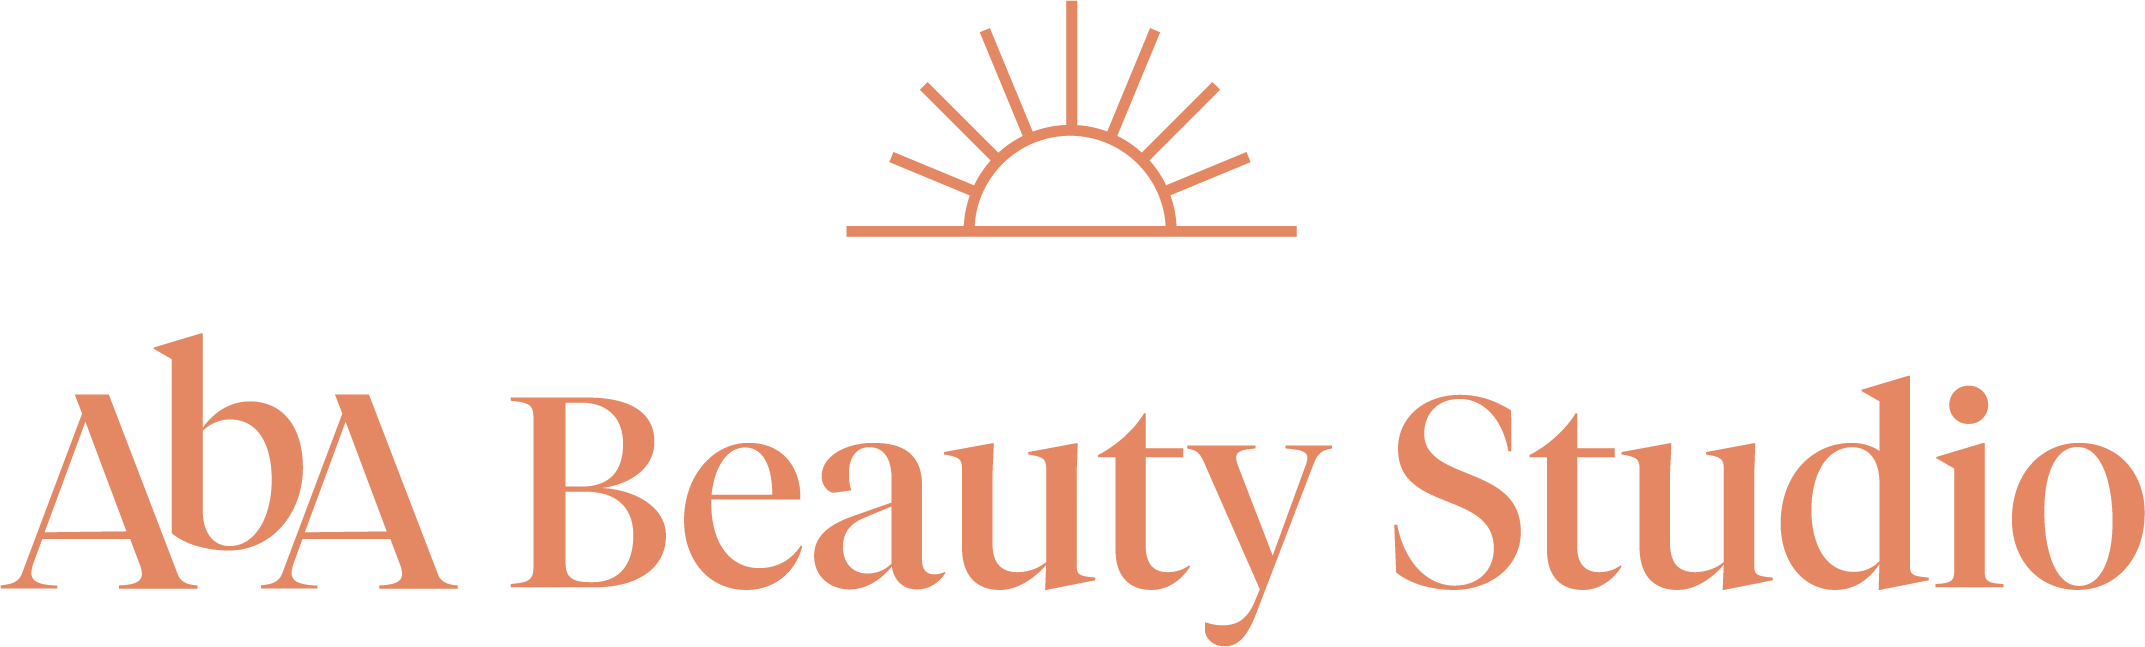 AbA Beauty Studio